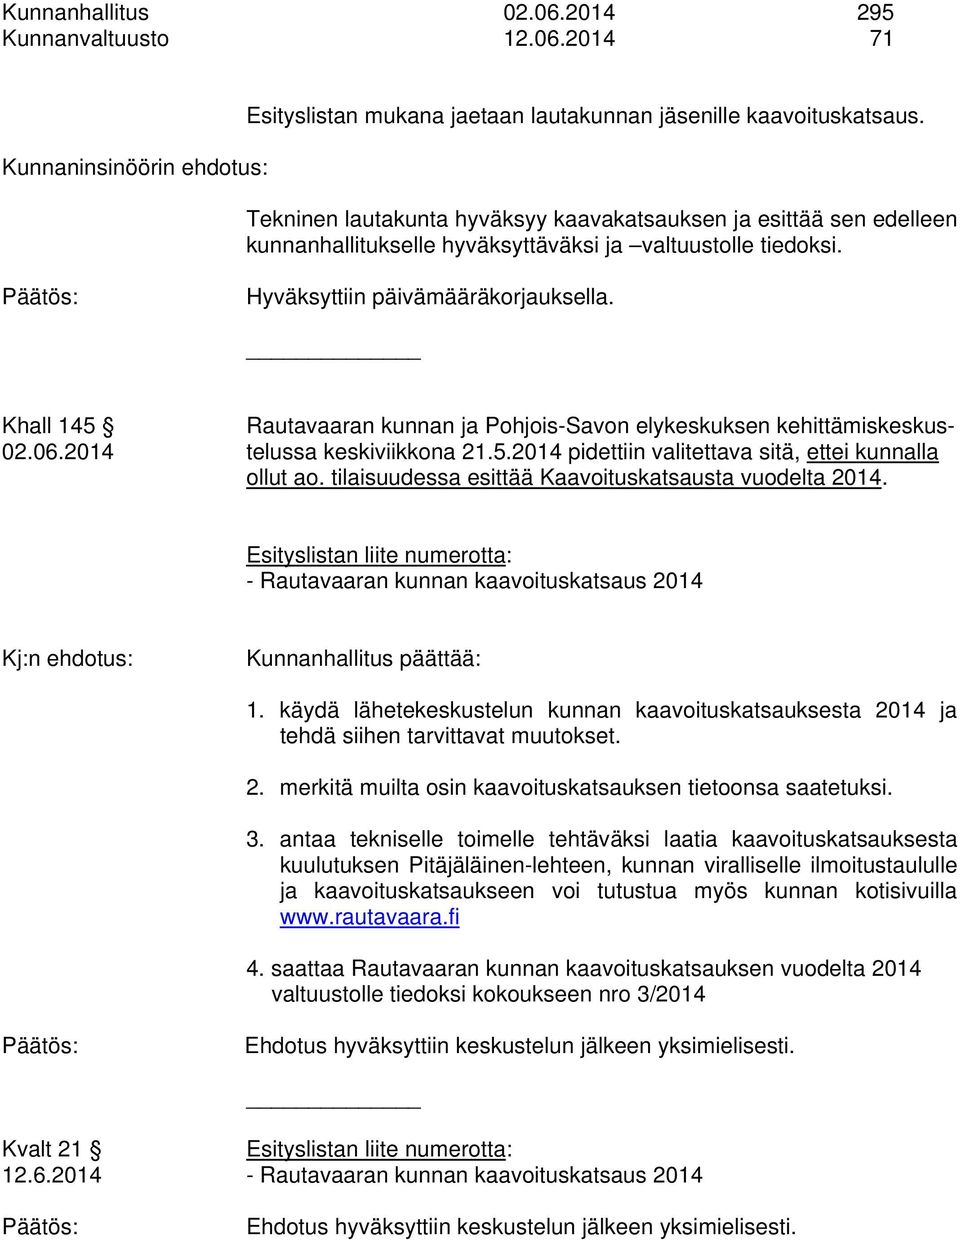 Khall 145 Rautavaaran kunnan ja Pohjois-Savon elykeskuksen kehittämiskeskus- 02.06.2014 telussa keskiviikkona 21.5.2014 pidettiin valitettava sitä, ettei kunnalla ollut ao.